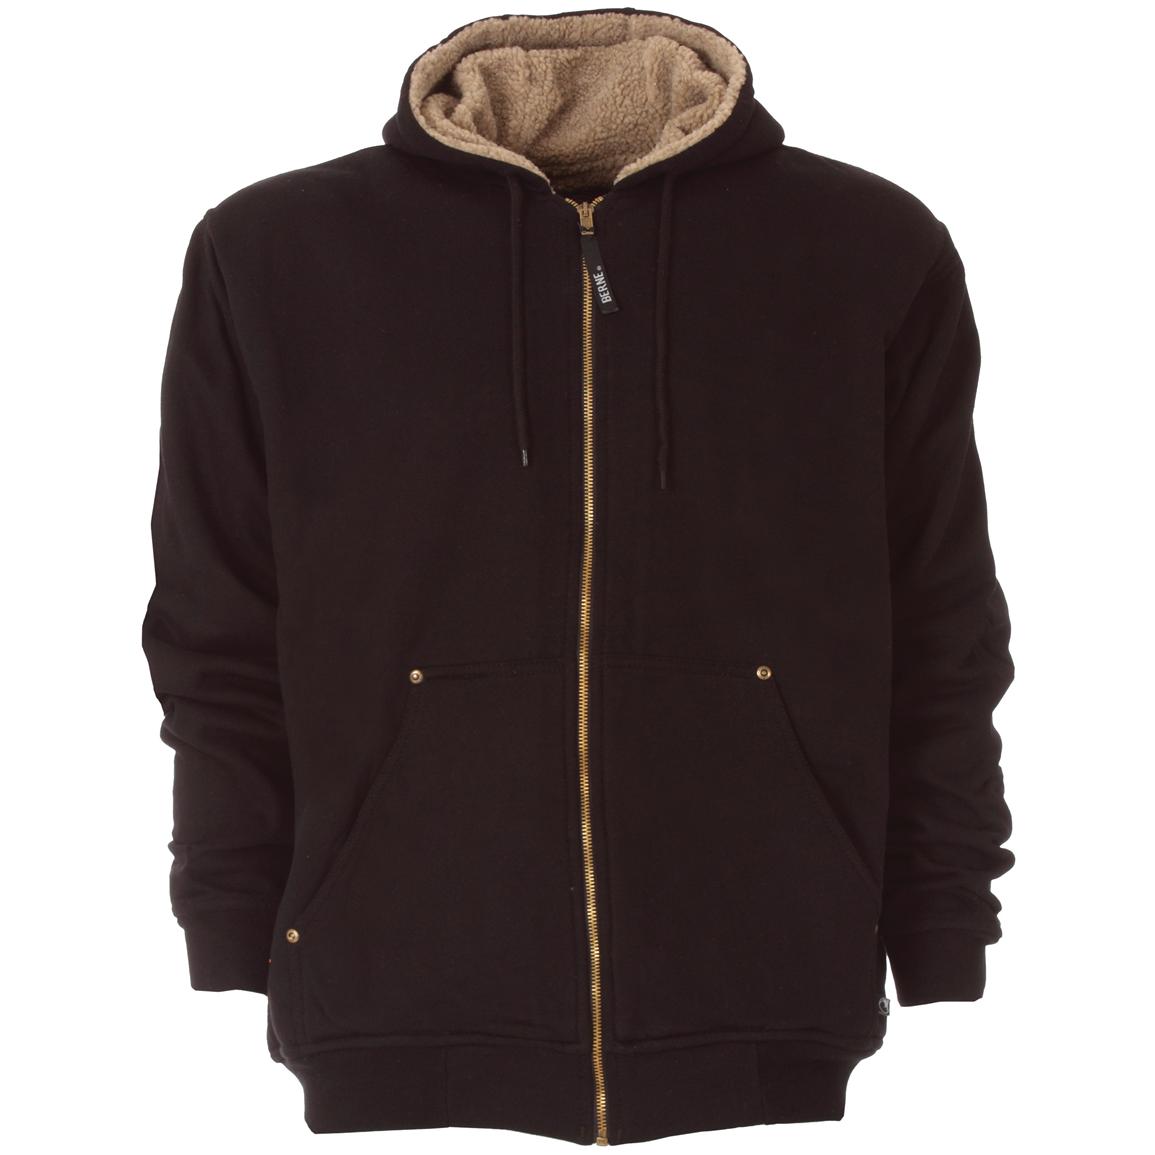 Sherpa - lined Zip Hoodie from Berne® - 221606, Sweatshirts & Hoodies ...